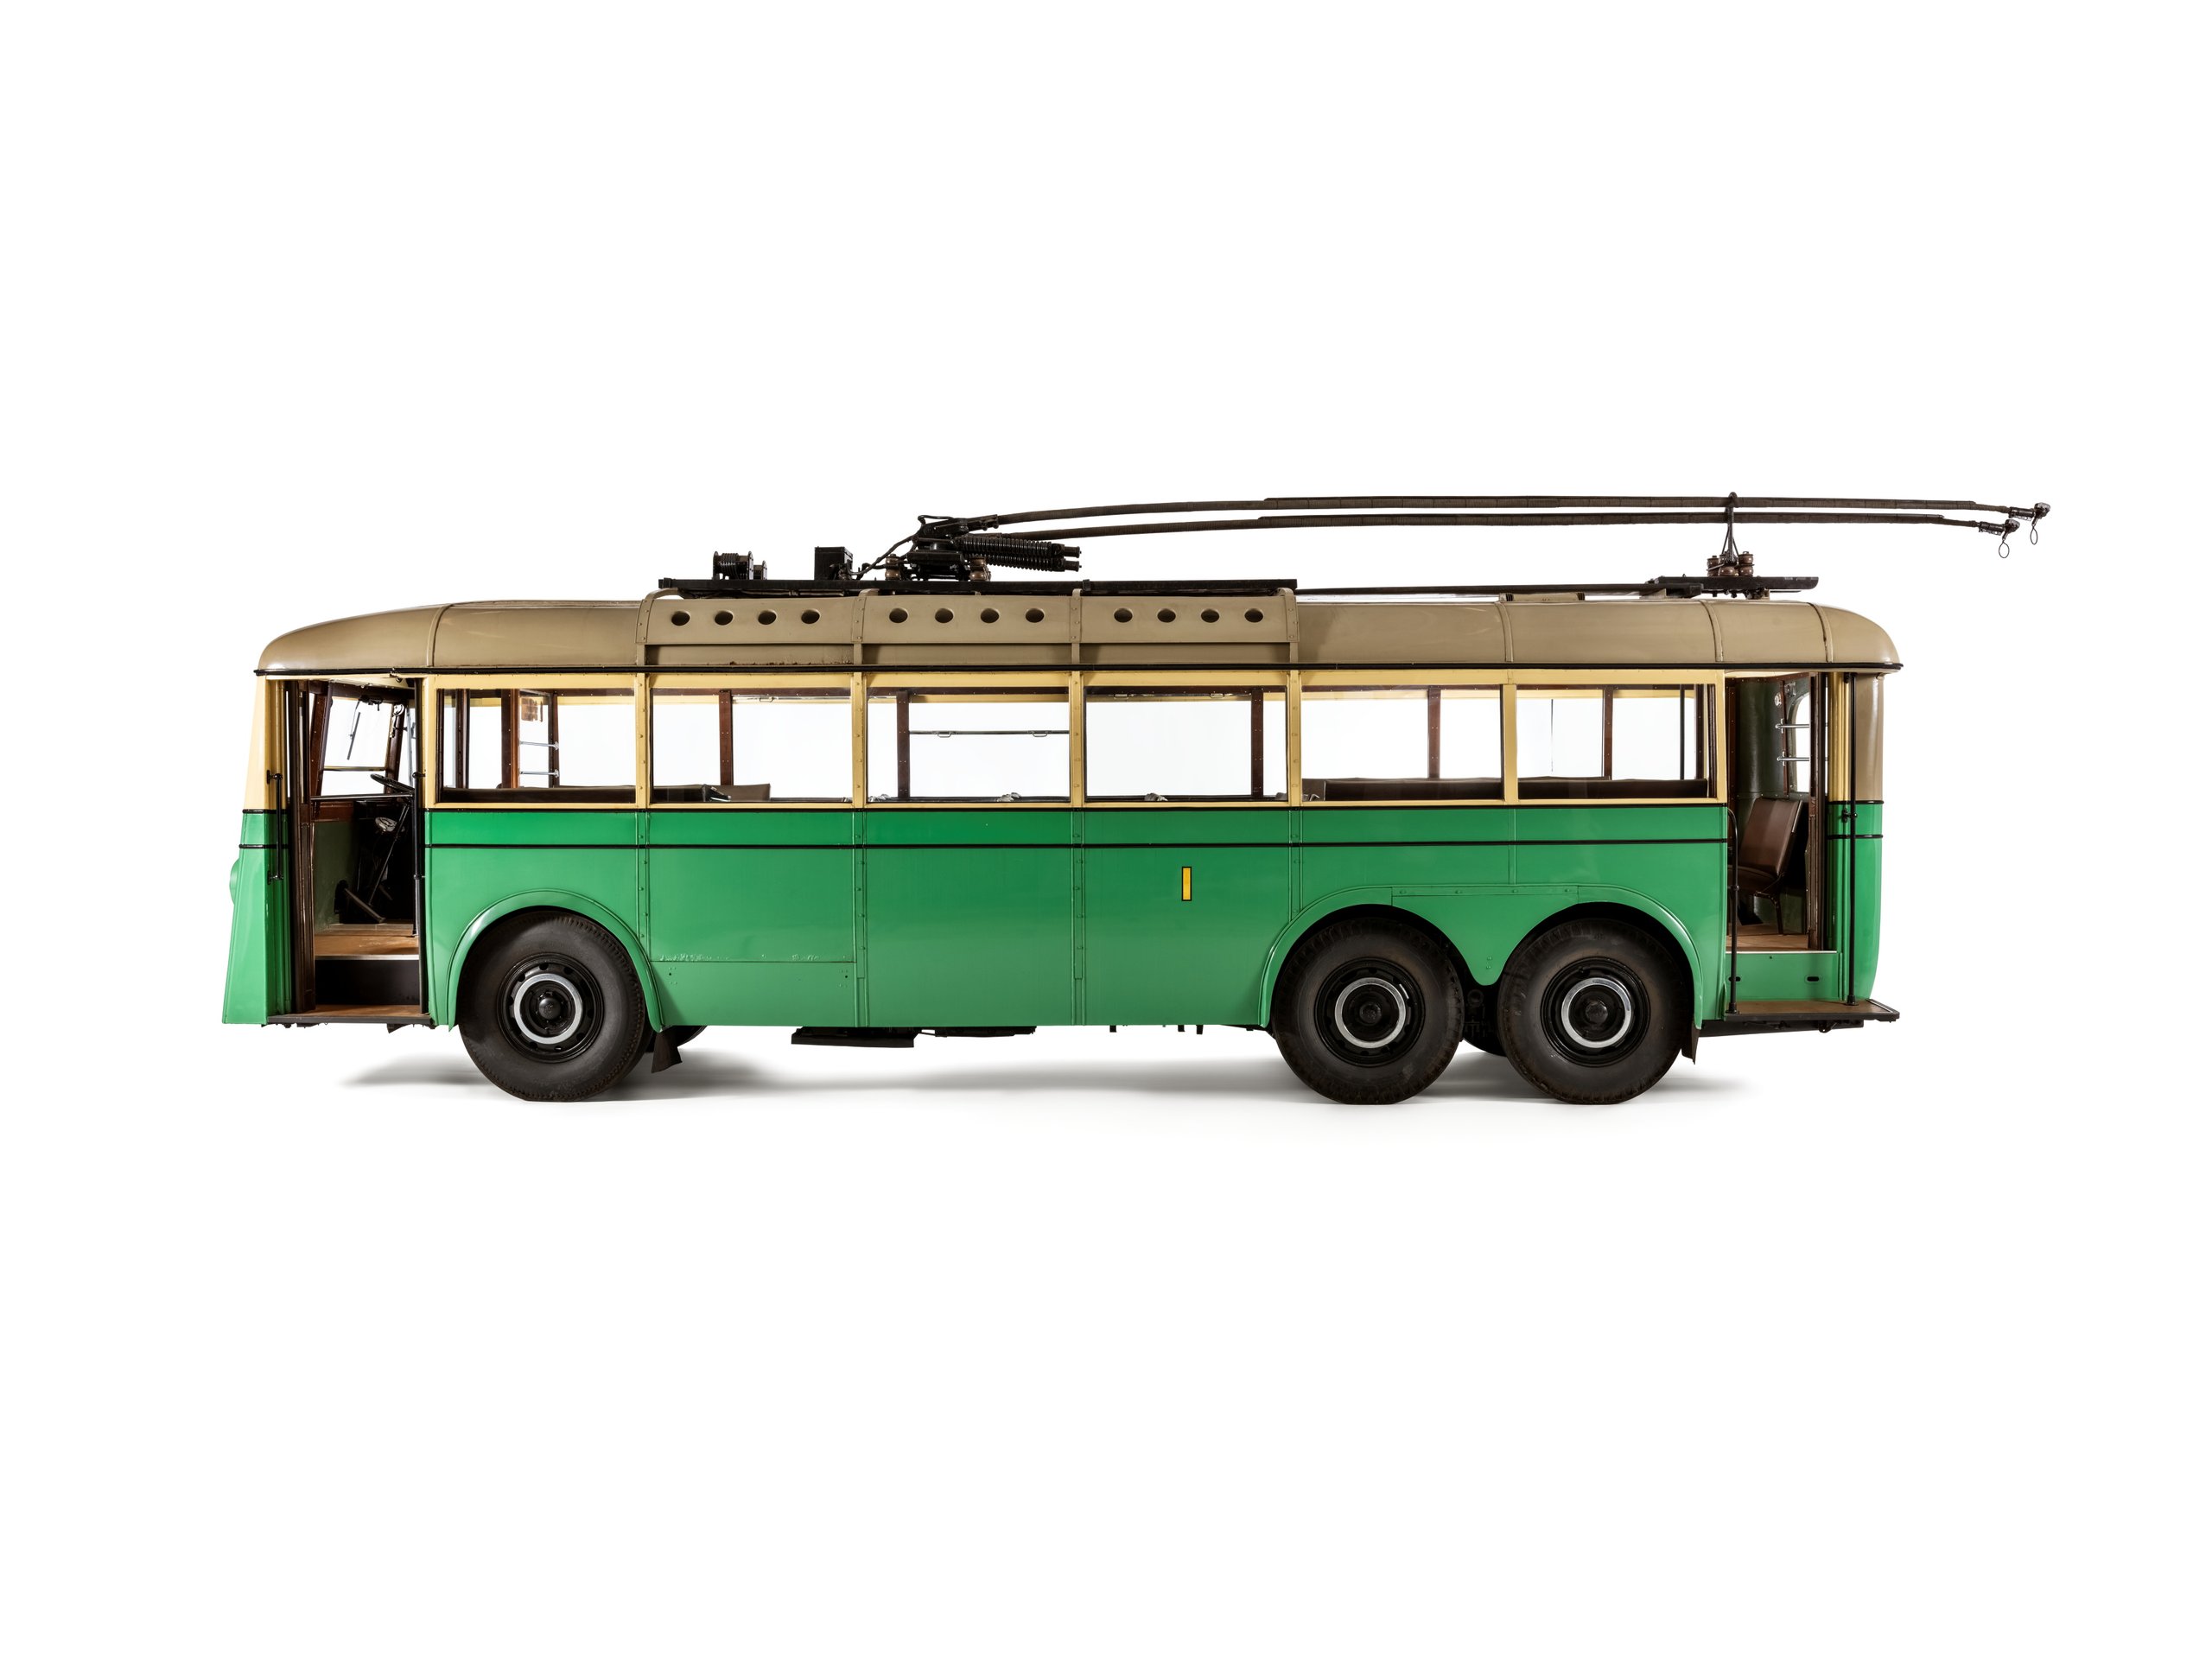 Sydney trolley bus No 1 by AEC